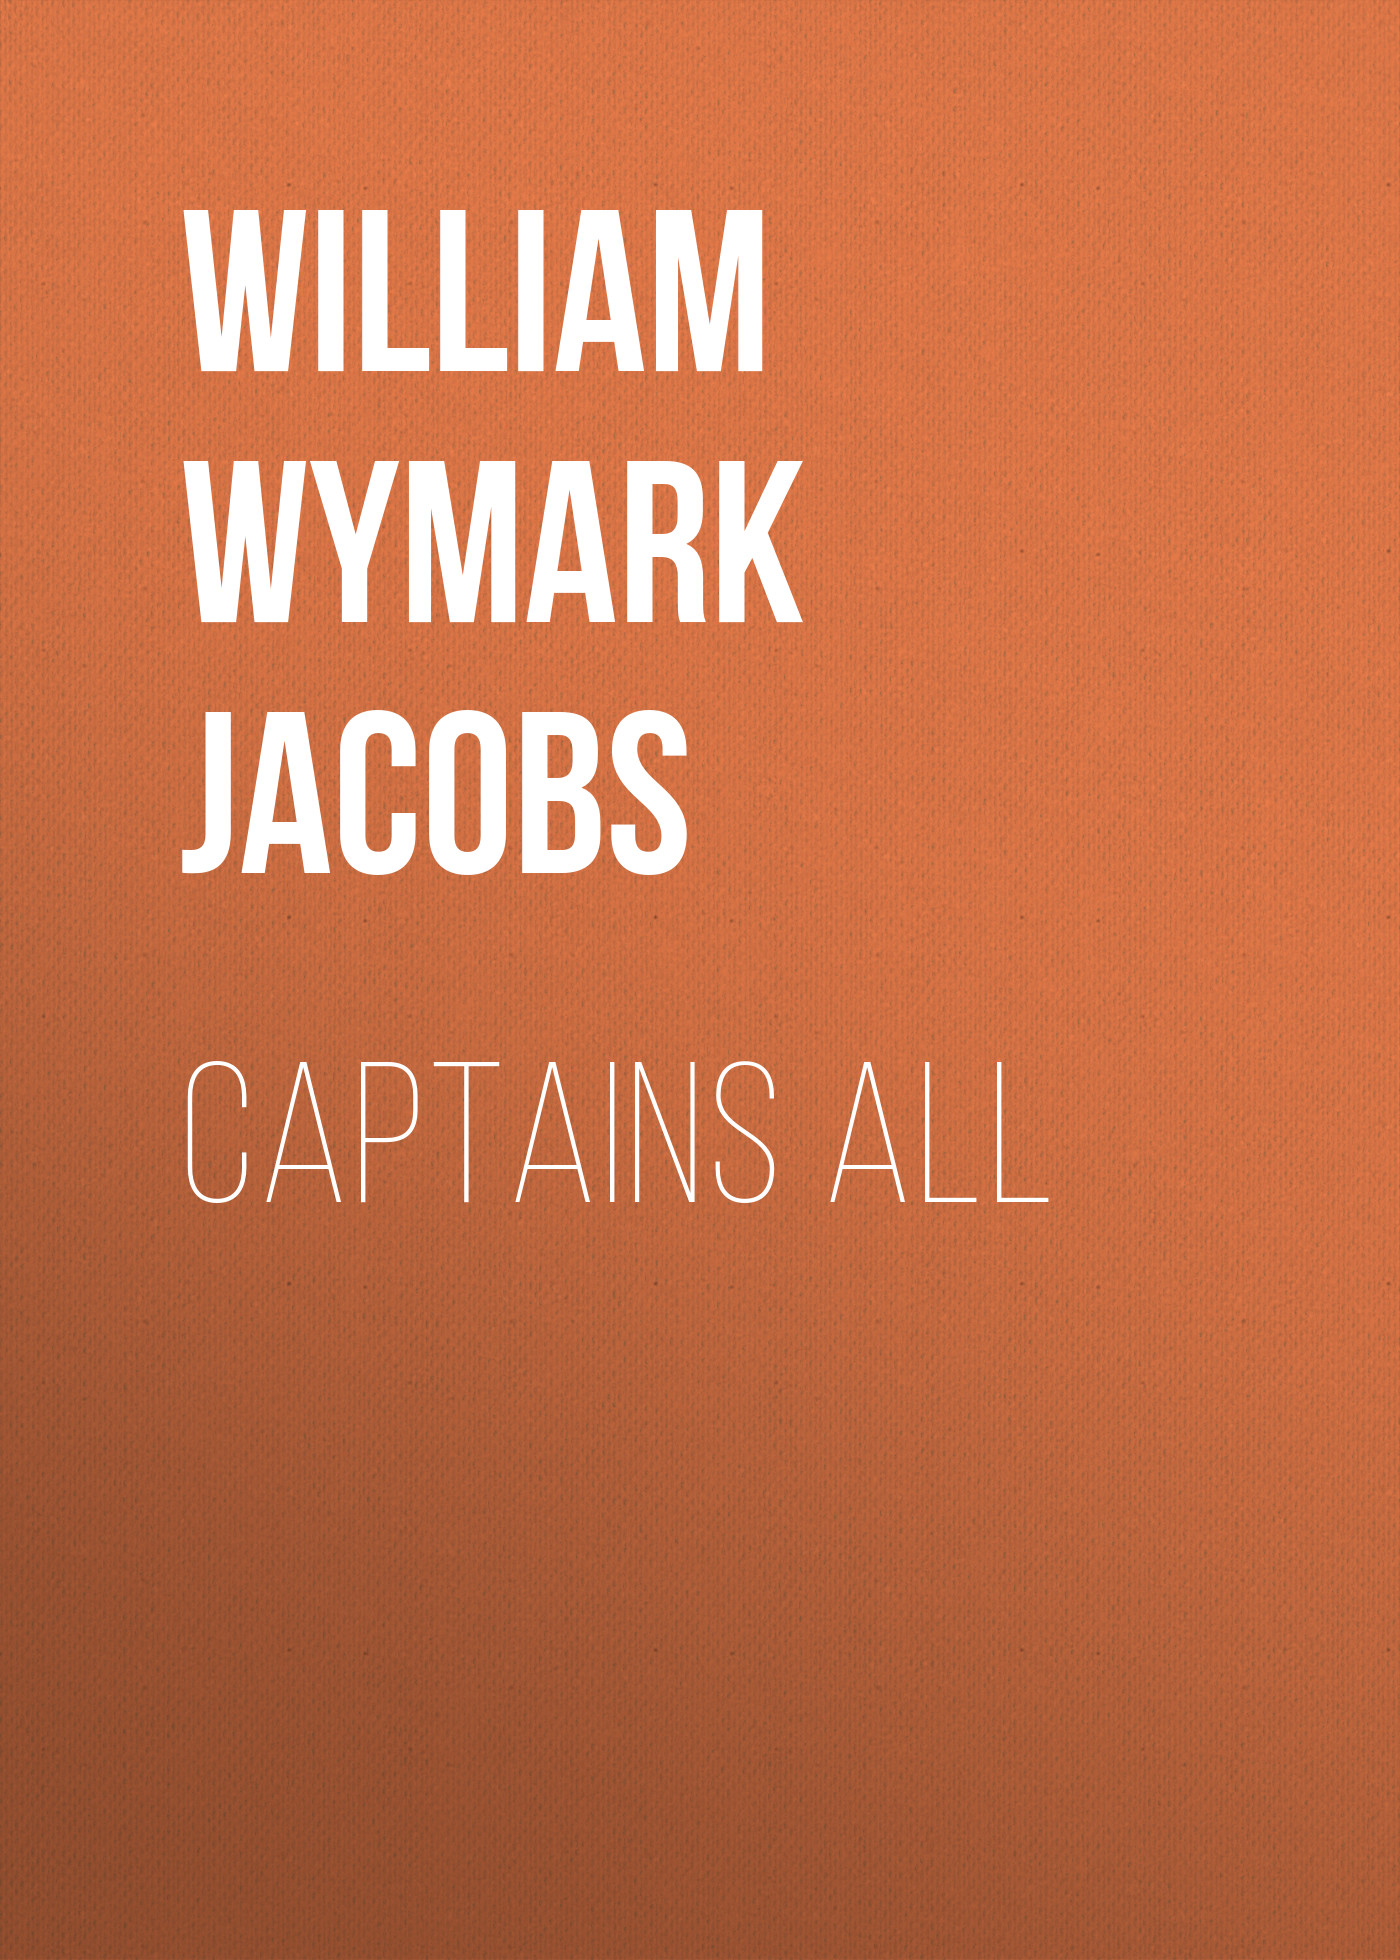 Книга Captains All из серии , созданная William Wymark Jacobs, может относится к жанру Зарубежный юмор, Зарубежная старинная литература, Зарубежная классика. Стоимость электронной книги Captains All с идентификатором 34842470 составляет 0 руб.